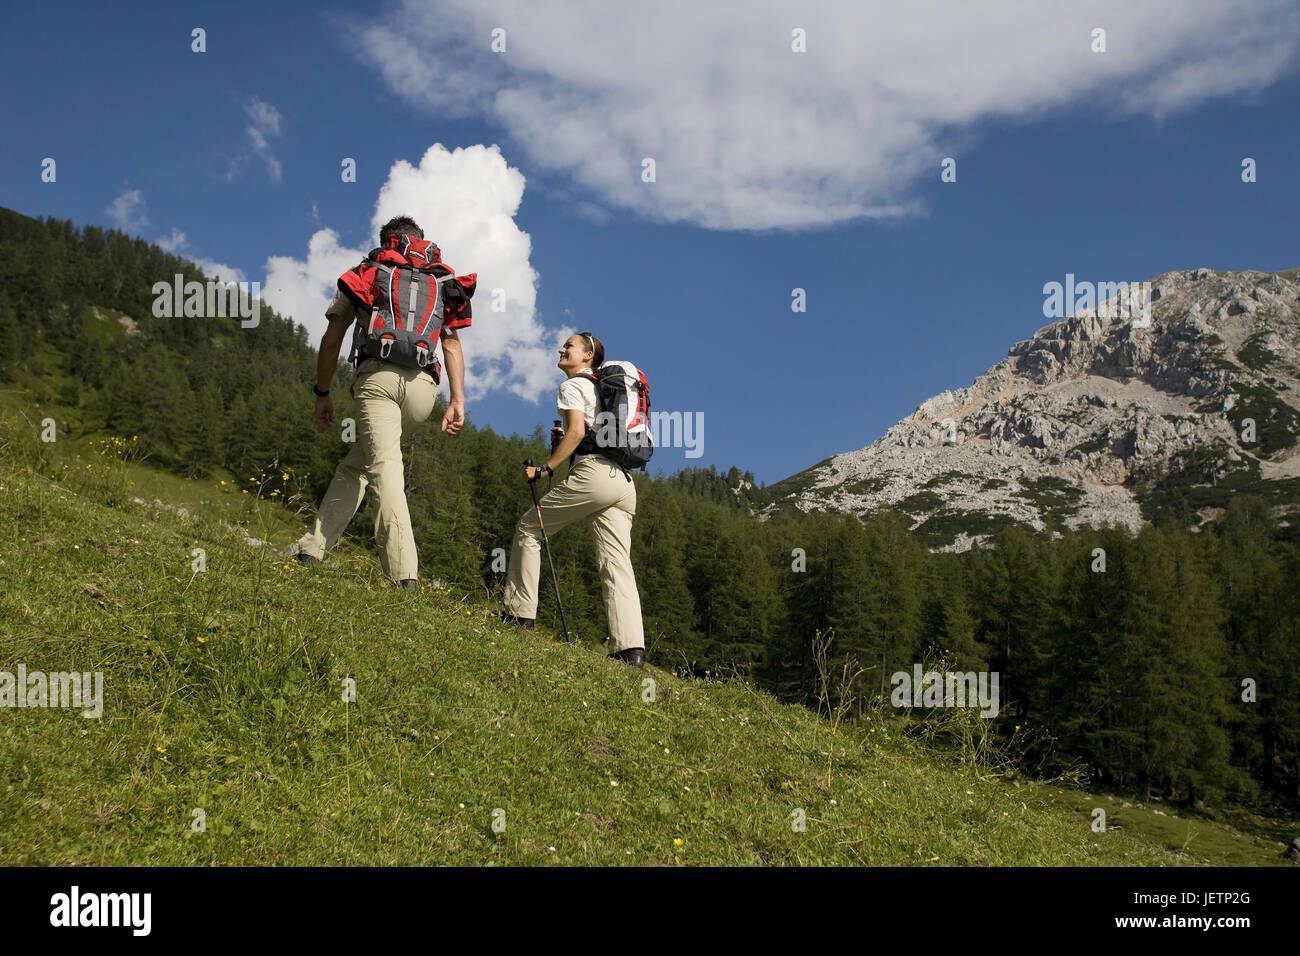 Pair walks in alpine scenery, Paar wandert in alpiner Landschaft Stock Photo